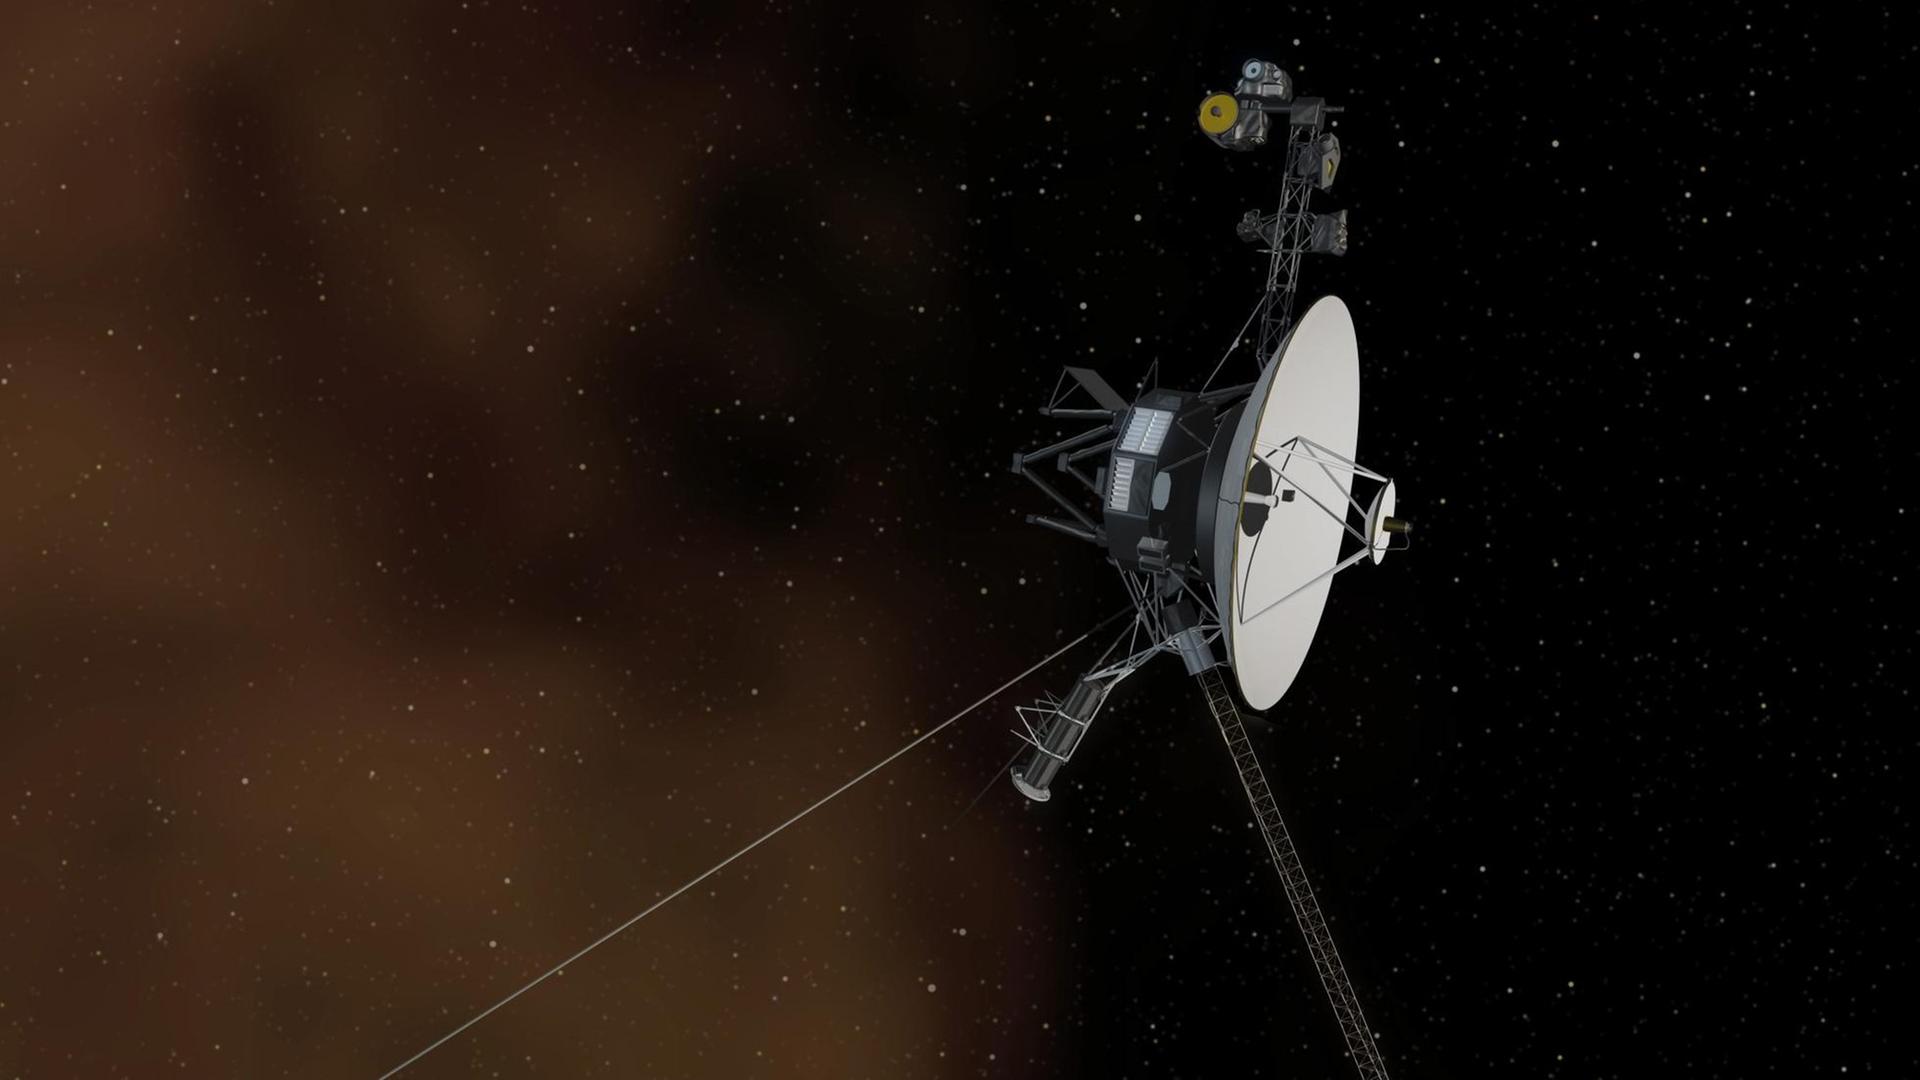 Die Raumsonde Voyager 1, die auf diesem Bild zu sehen ist, ist seit knapp vier Jahrzehnten unterwegs und mittlerweile im interstellaren Raum angekommen.